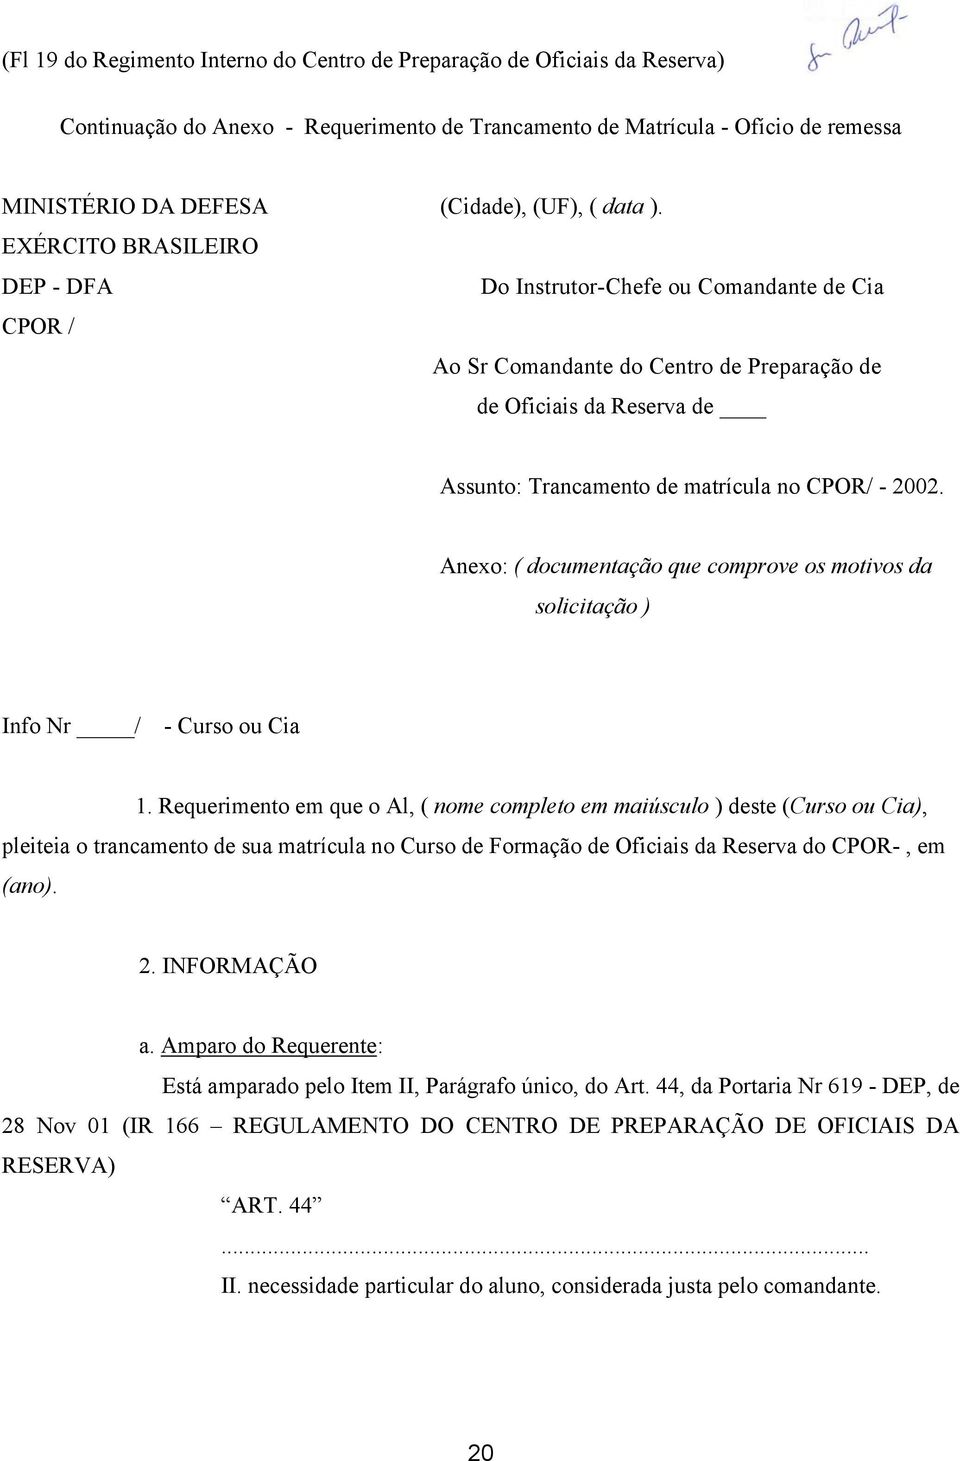 EXÉRCITO BRASILEIRO DEP - DFA Do Instrutor-Chefe ou Comandante de Cia CPOR / Ao Sr Comandante do Centro de Preparação de de Oficiais da Reserva de Assunto: Trancamento de matrícula no CPOR/ - 2002.